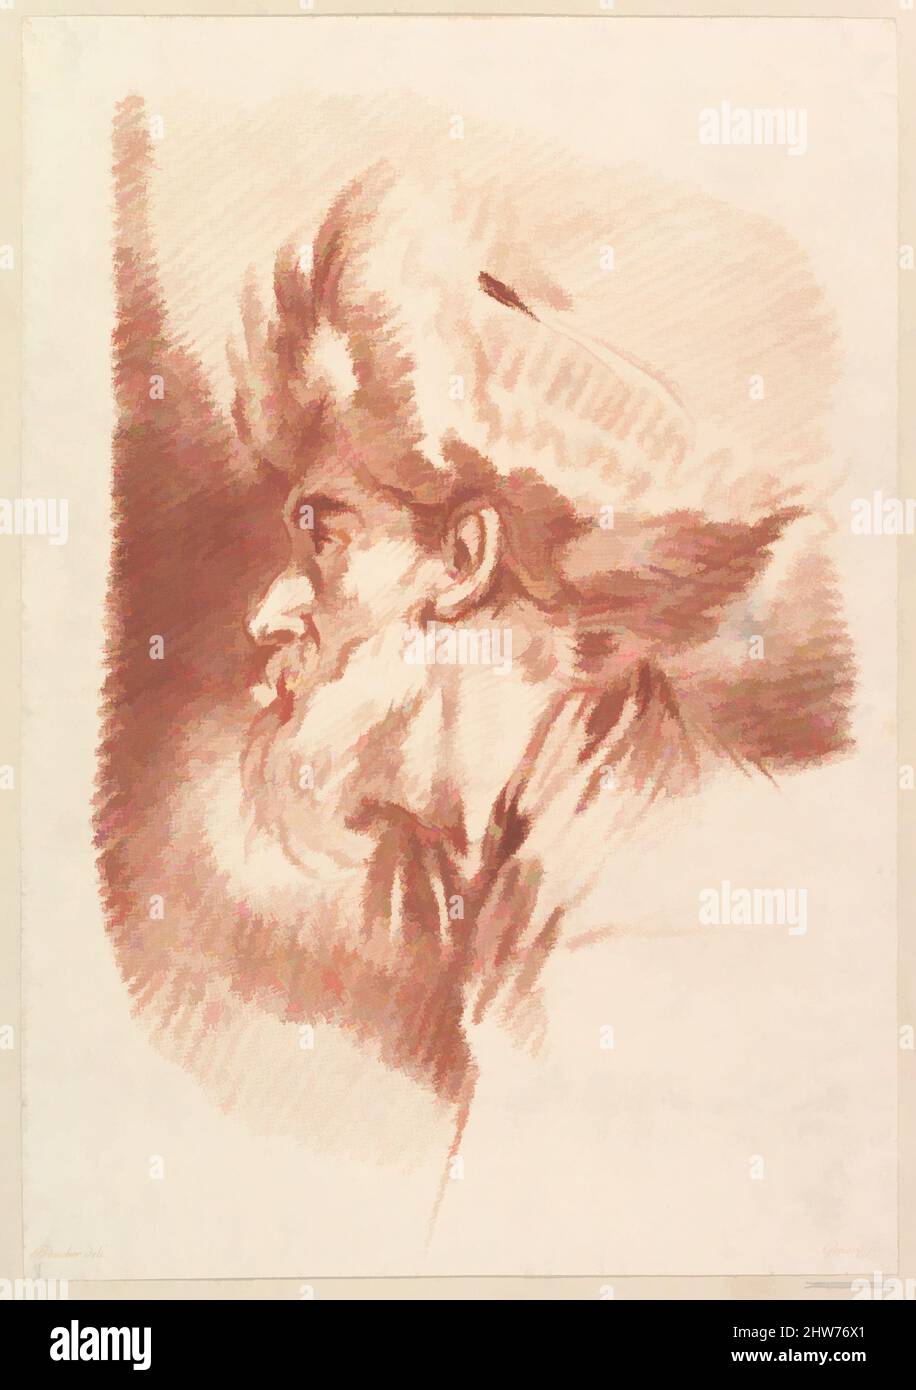 Kunst inspiriert von Untitled (Head of A man in Turban), Mitte des 18.. Jahrhunderts bis Anfang des 19.. Jahrhunderts, Crayon Manner Gravur in brauner Tinte gedruckt, Blatt (beschnitten): 15 1/16 × 10 1/2 Zoll (38,2 × 26,6 cm), Drucke, François Gonord (Französisch, 1756–1825), nach François Boucher (Französisch, Paris 1703–1770, Klassische Werke, die von Artotop mit einem Schuss Moderne modernisiert wurden. Formen, Farbe und Wert, auffällige visuelle Wirkung auf Kunst. Emotionen durch Freiheit von Kunstwerken auf zeitgemäße Weise. Eine zeitlose Botschaft, die eine wild kreative neue Richtung verfolgt. Künstler, die sich dem digitalen Medium zuwenden und die Artotop NFT erschaffen Stockfoto